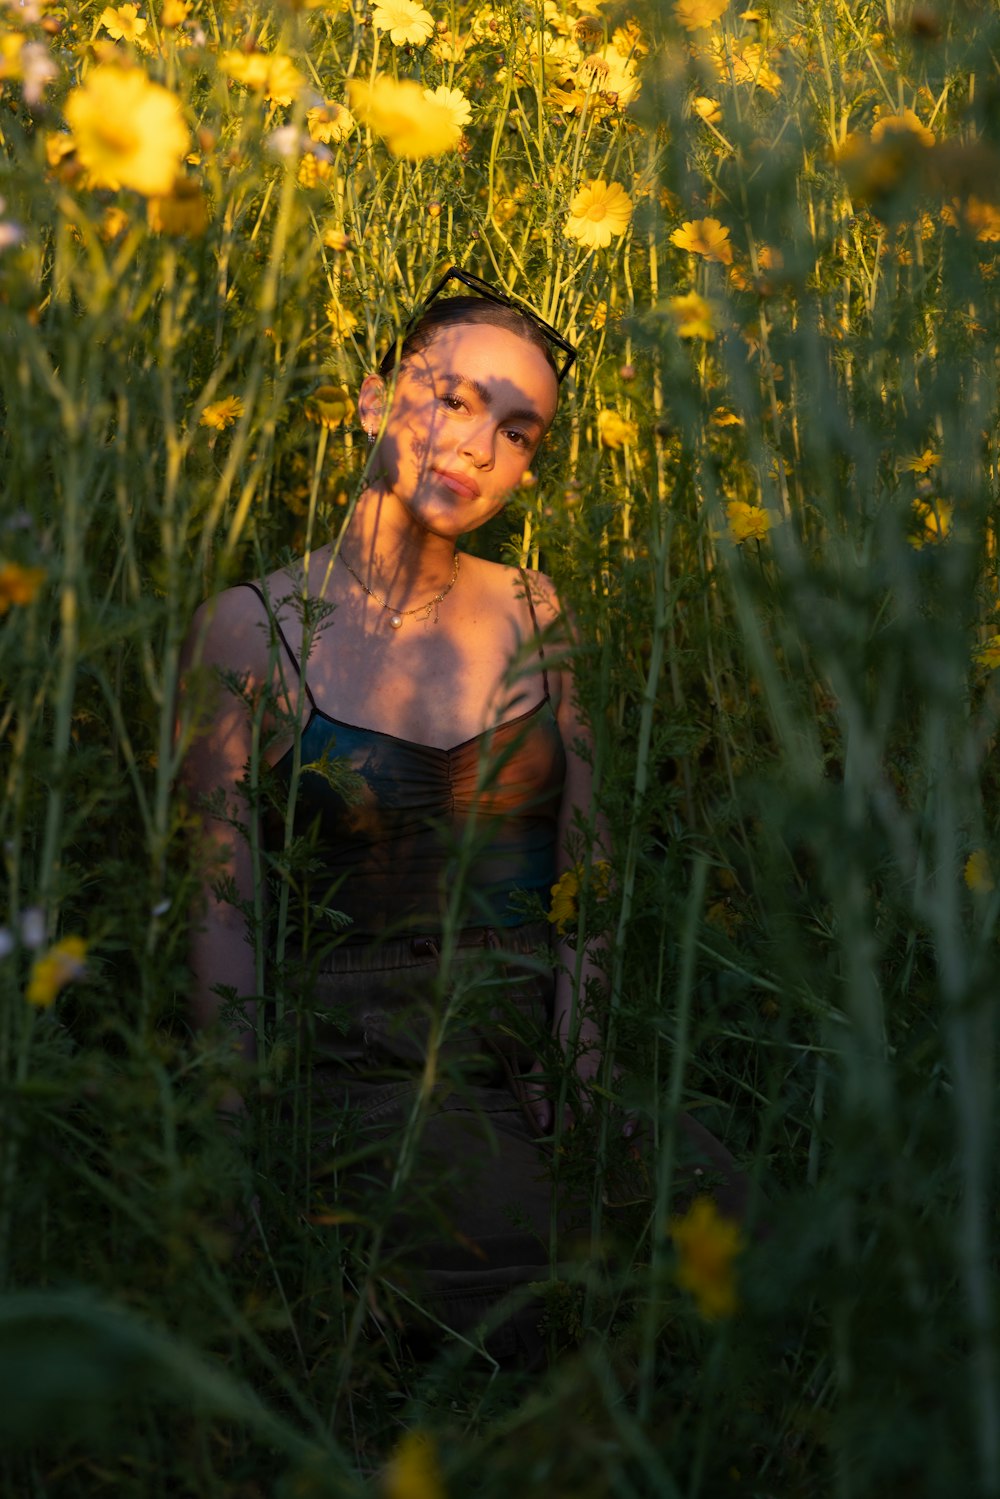 노란 꽃밭에 앉아 있는 여자